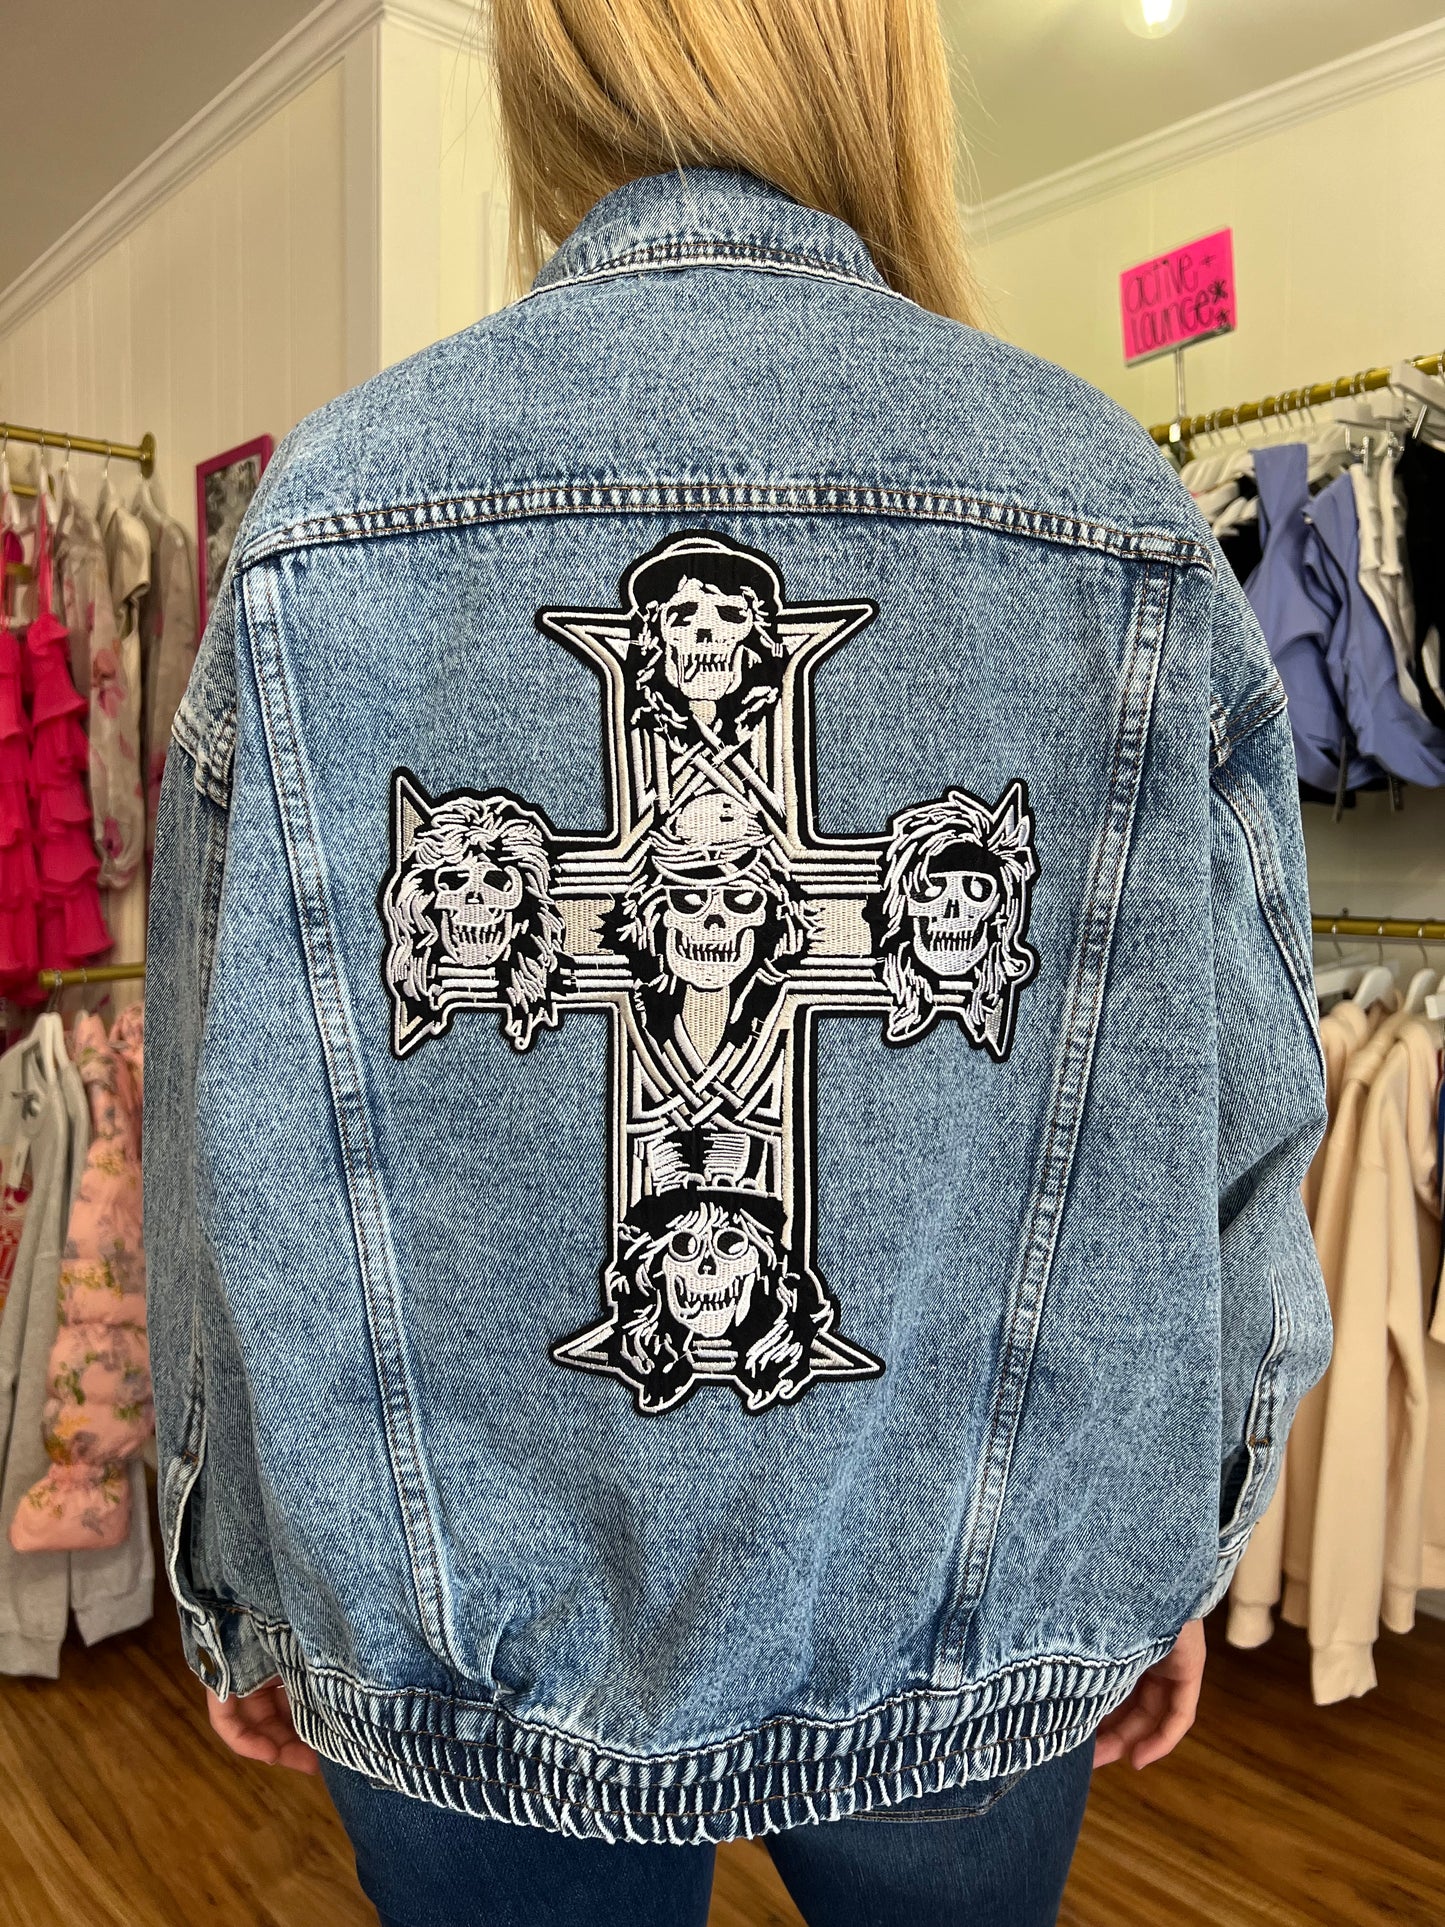 Guns N’ Roses Handmade Denim Patch Jacket